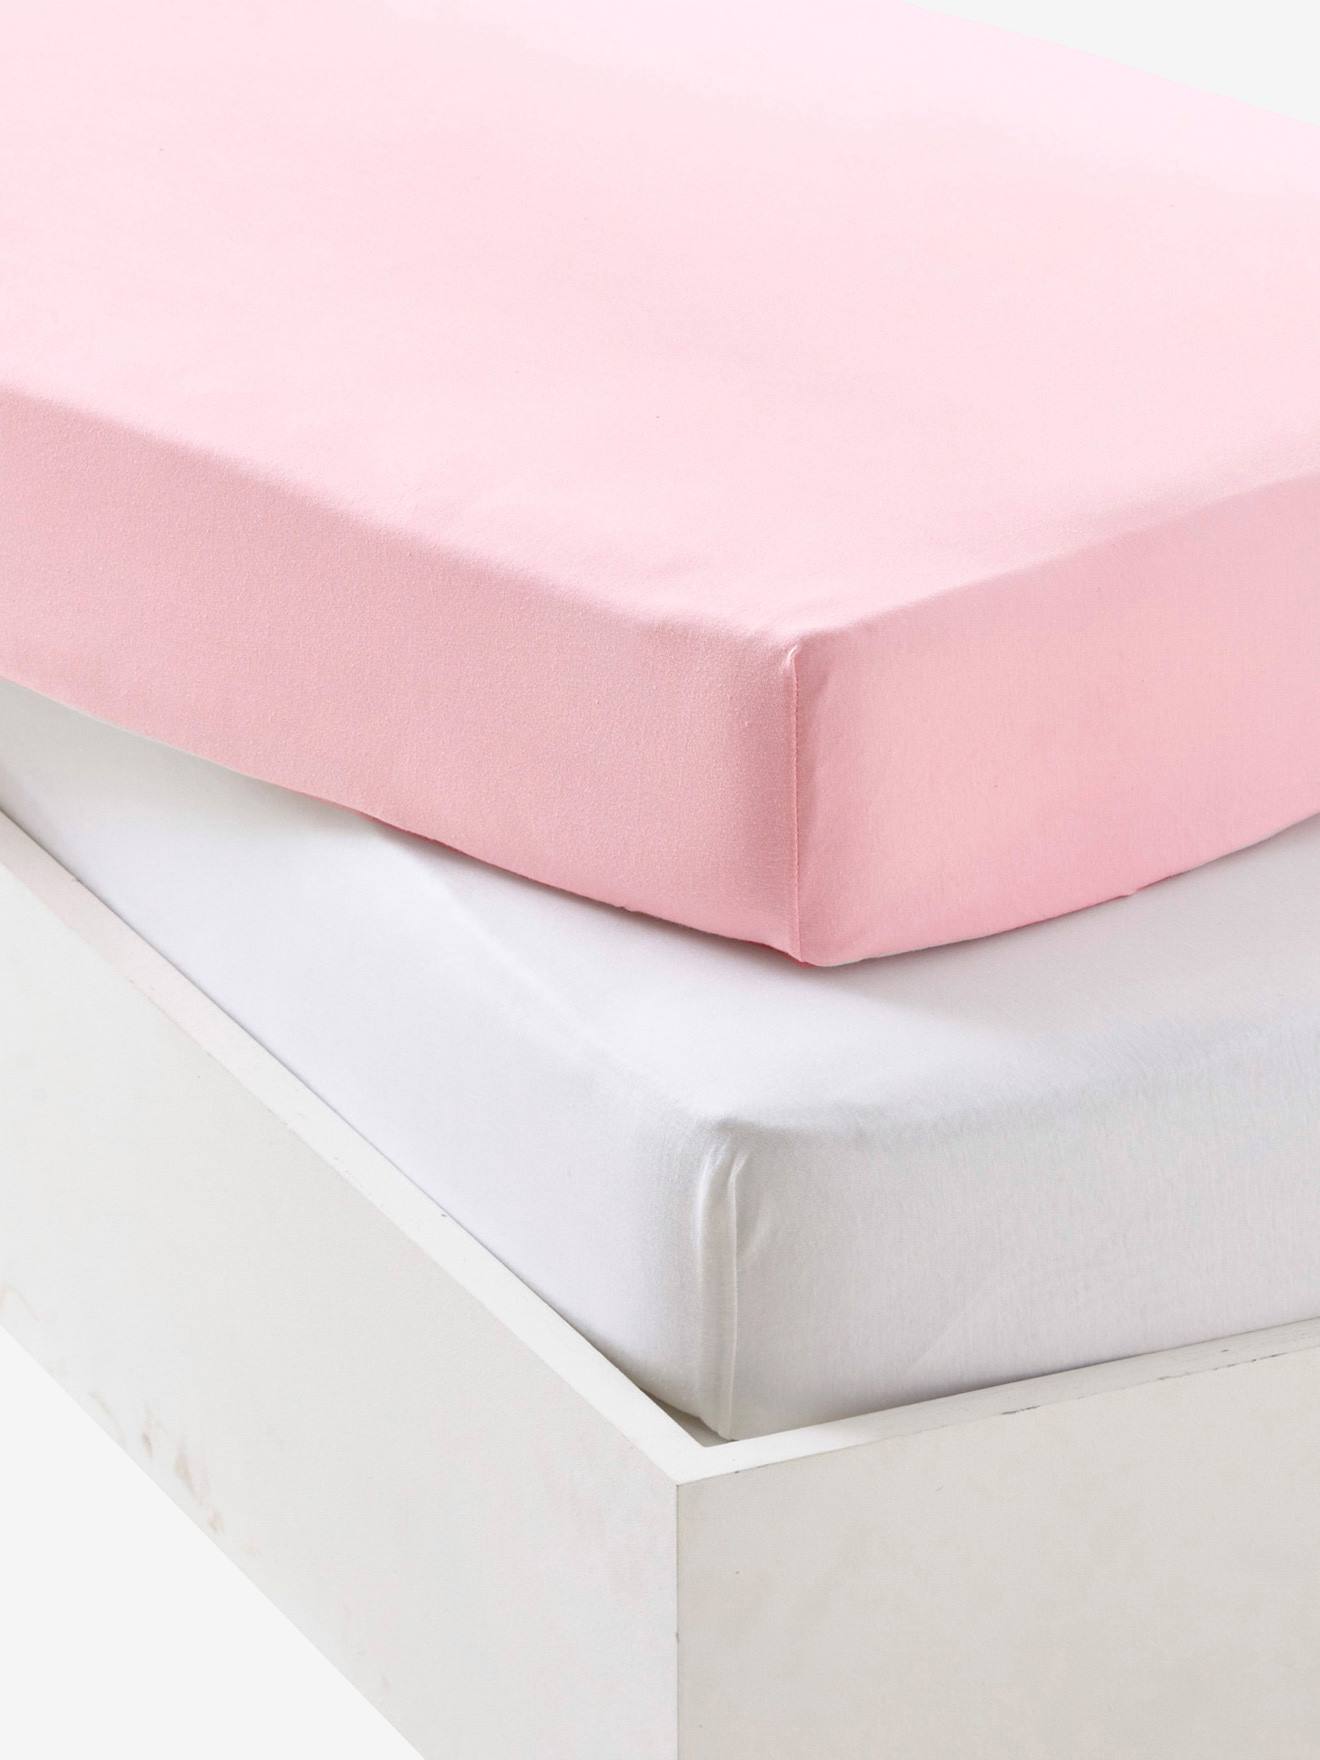 VERTBAUDET Pack de 2 sábanas bajeras de punto elástico bebé rosa palido